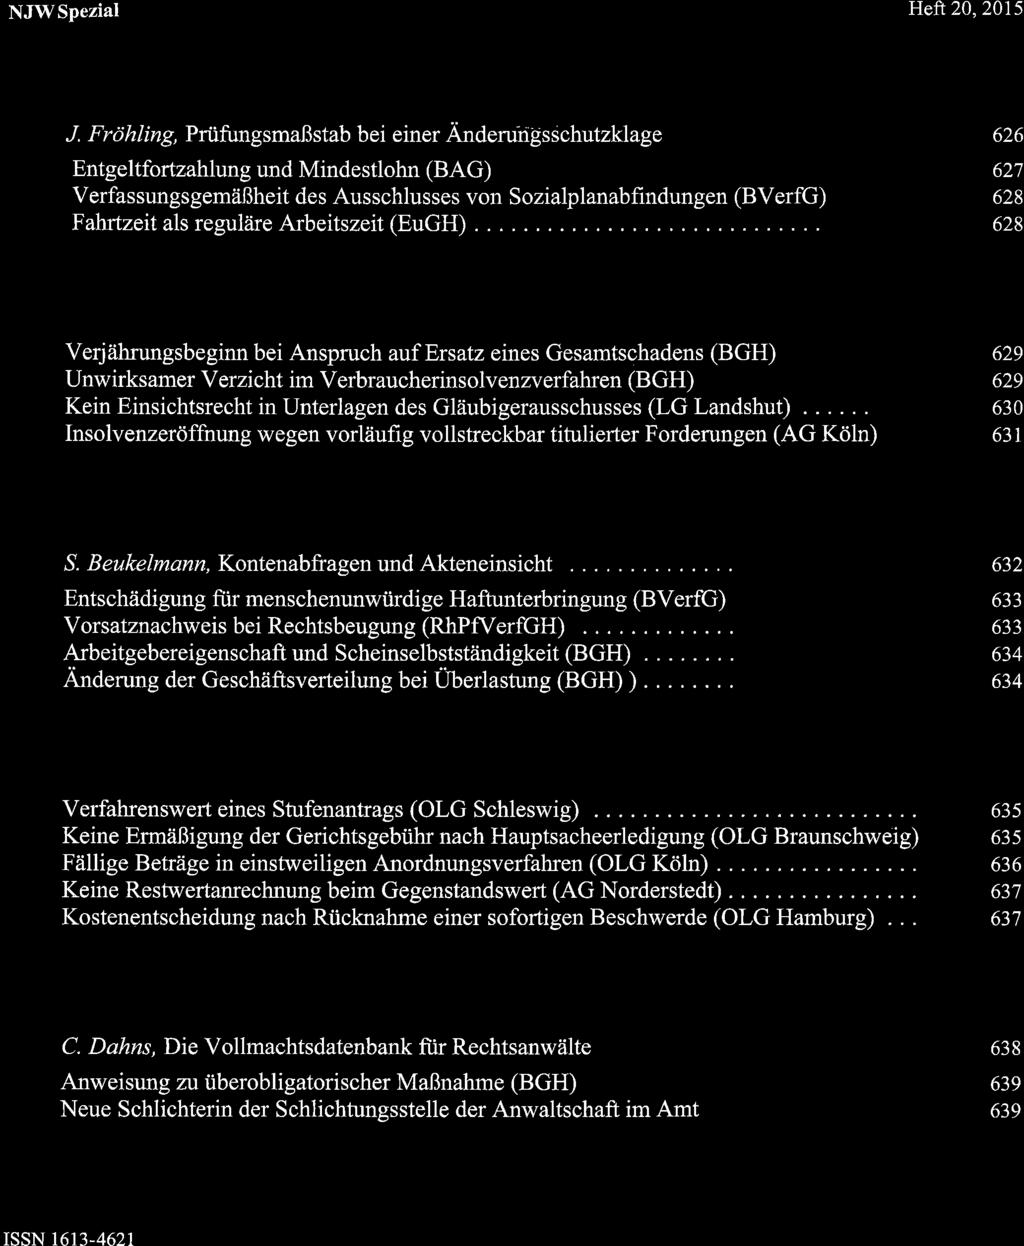 NJWSpezial,t\ r?: :.' ì.-'r,.',.î.' '.' Heft20,2015 Arbeitsrecht Von Marcel und Robert von Steinau-Steinrück J.